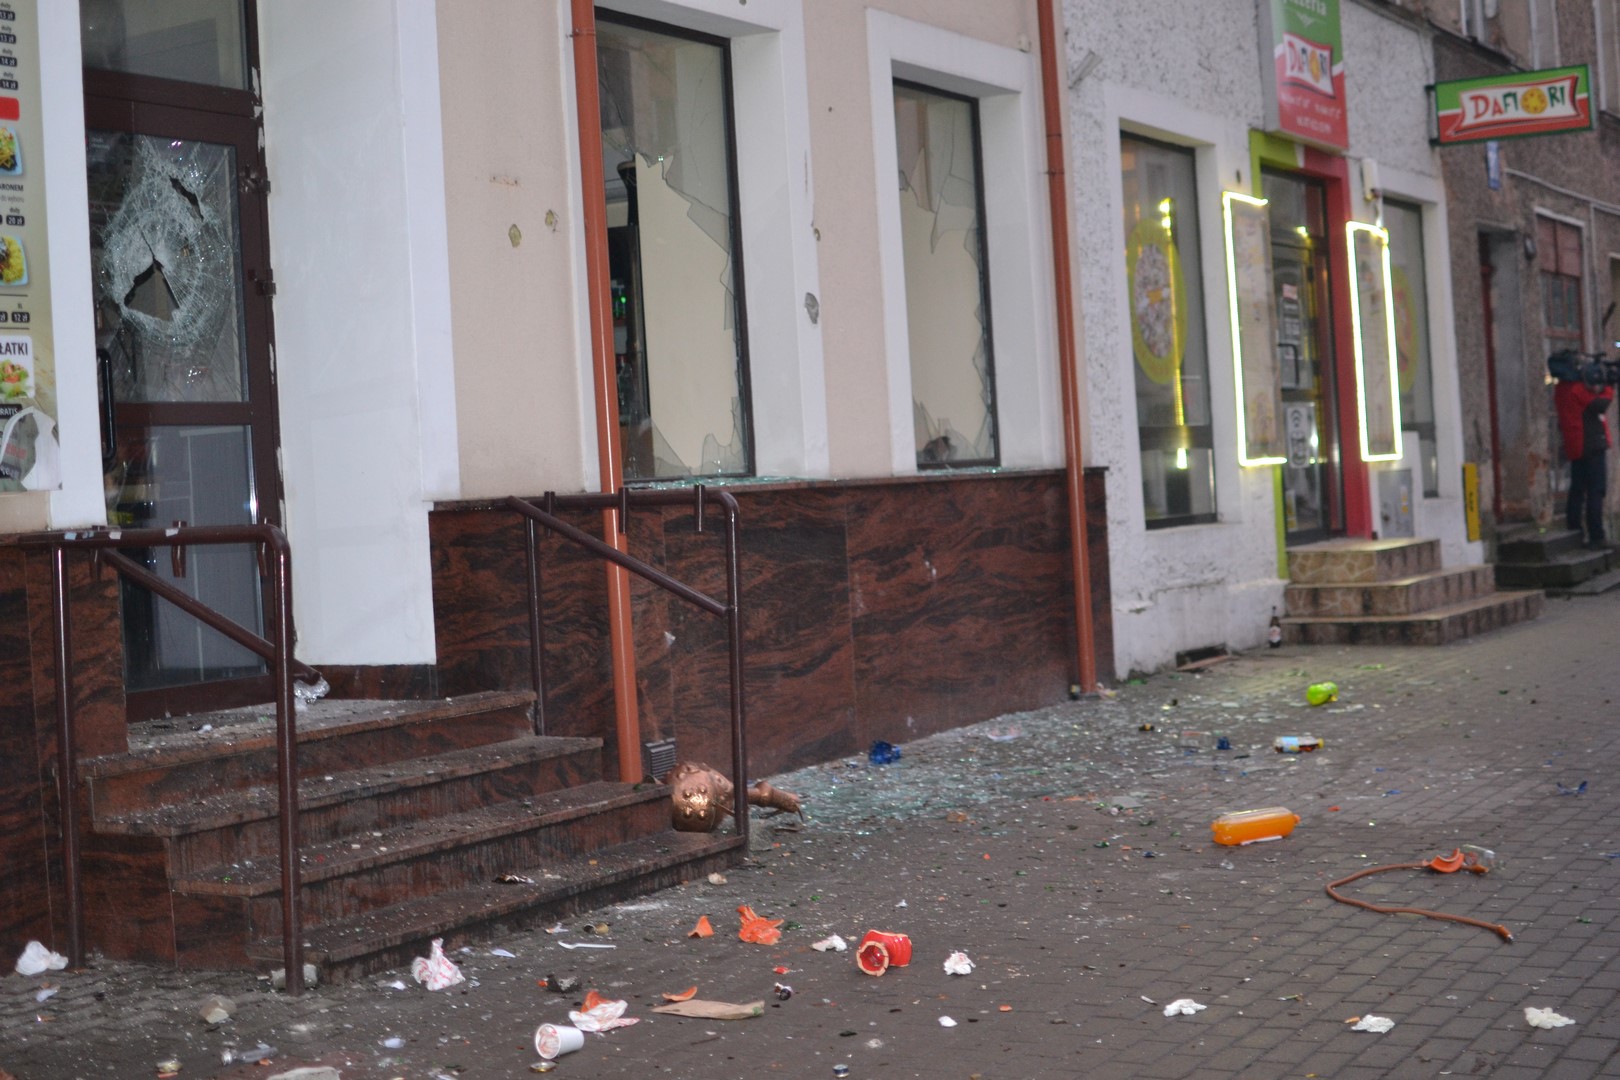 Koktajl Mołotowa, butelki, petardy — tak wyglądała manifestacja w Ełku. Zatrzymanych kilka osób